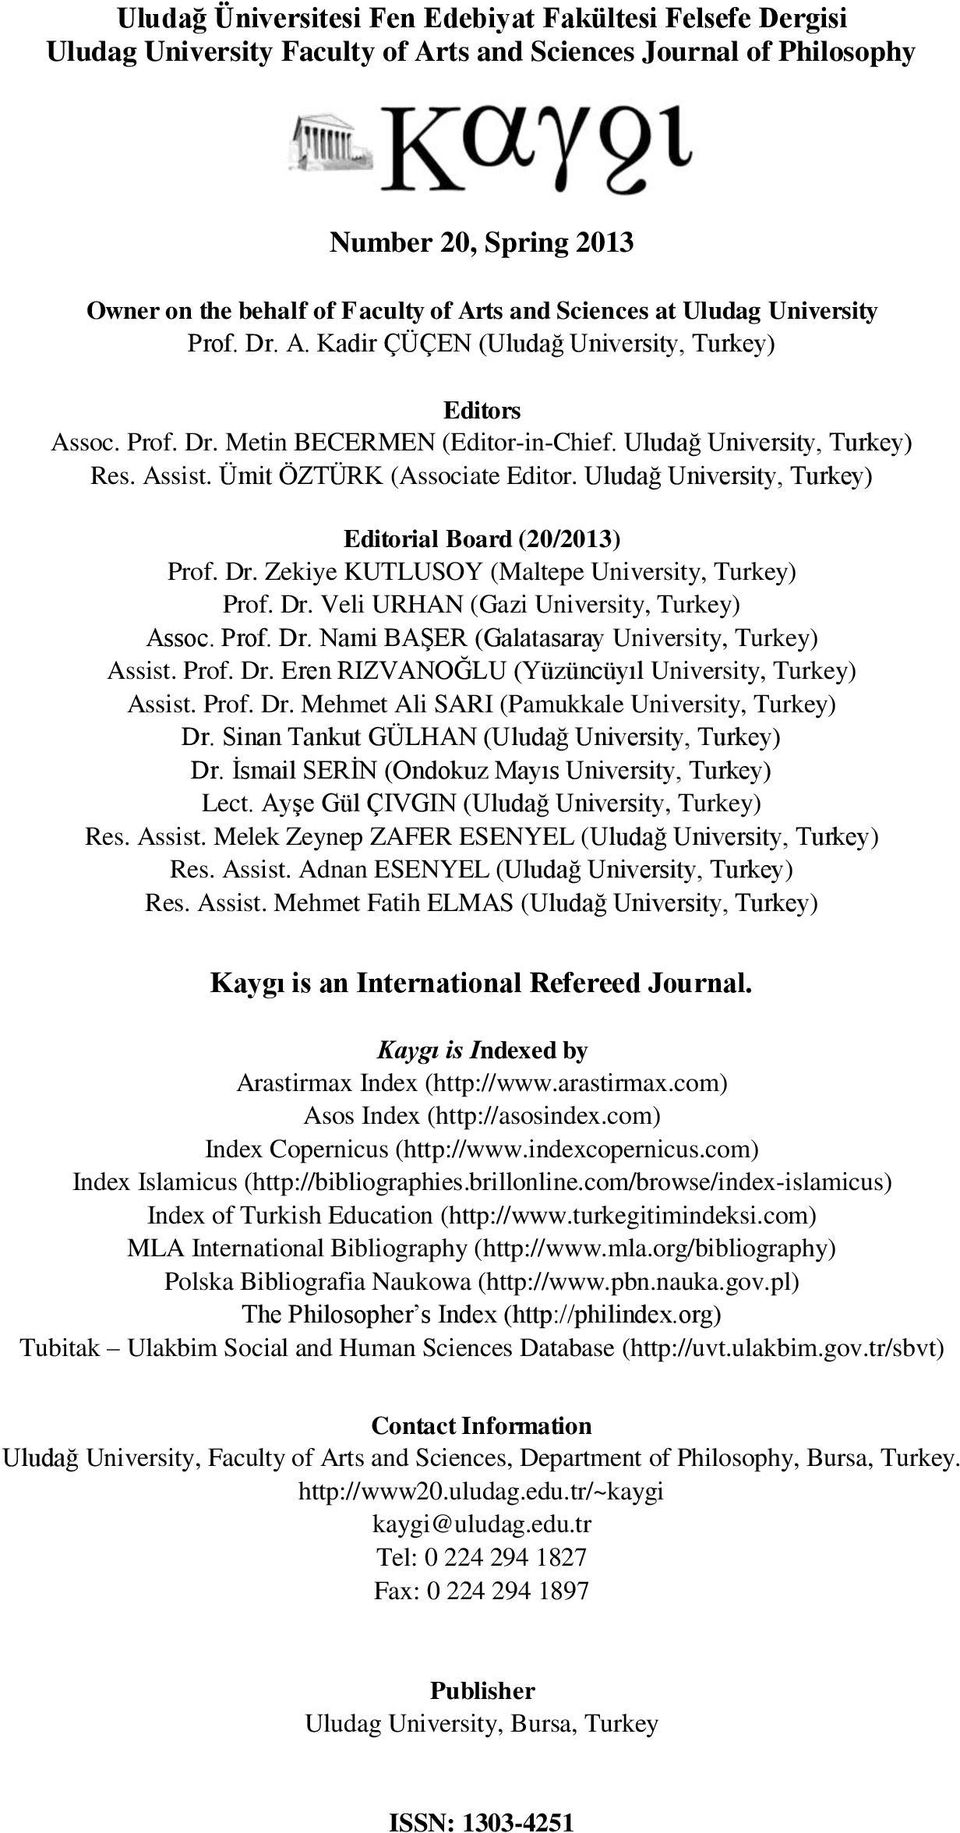 Ümit ÖZTÜRK (Associate Editor. Uludağ University, Turkey) Editorial Board (20/2013) Prof. Dr. Zekiye KUTLUSOY (Maltepe University, Turkey) Prof. Dr. Veli URHAN (Gazi University, Turkey) Assoc. Prof. Dr. Nami BAŞER (Galatasaray University, Turkey) Assist.